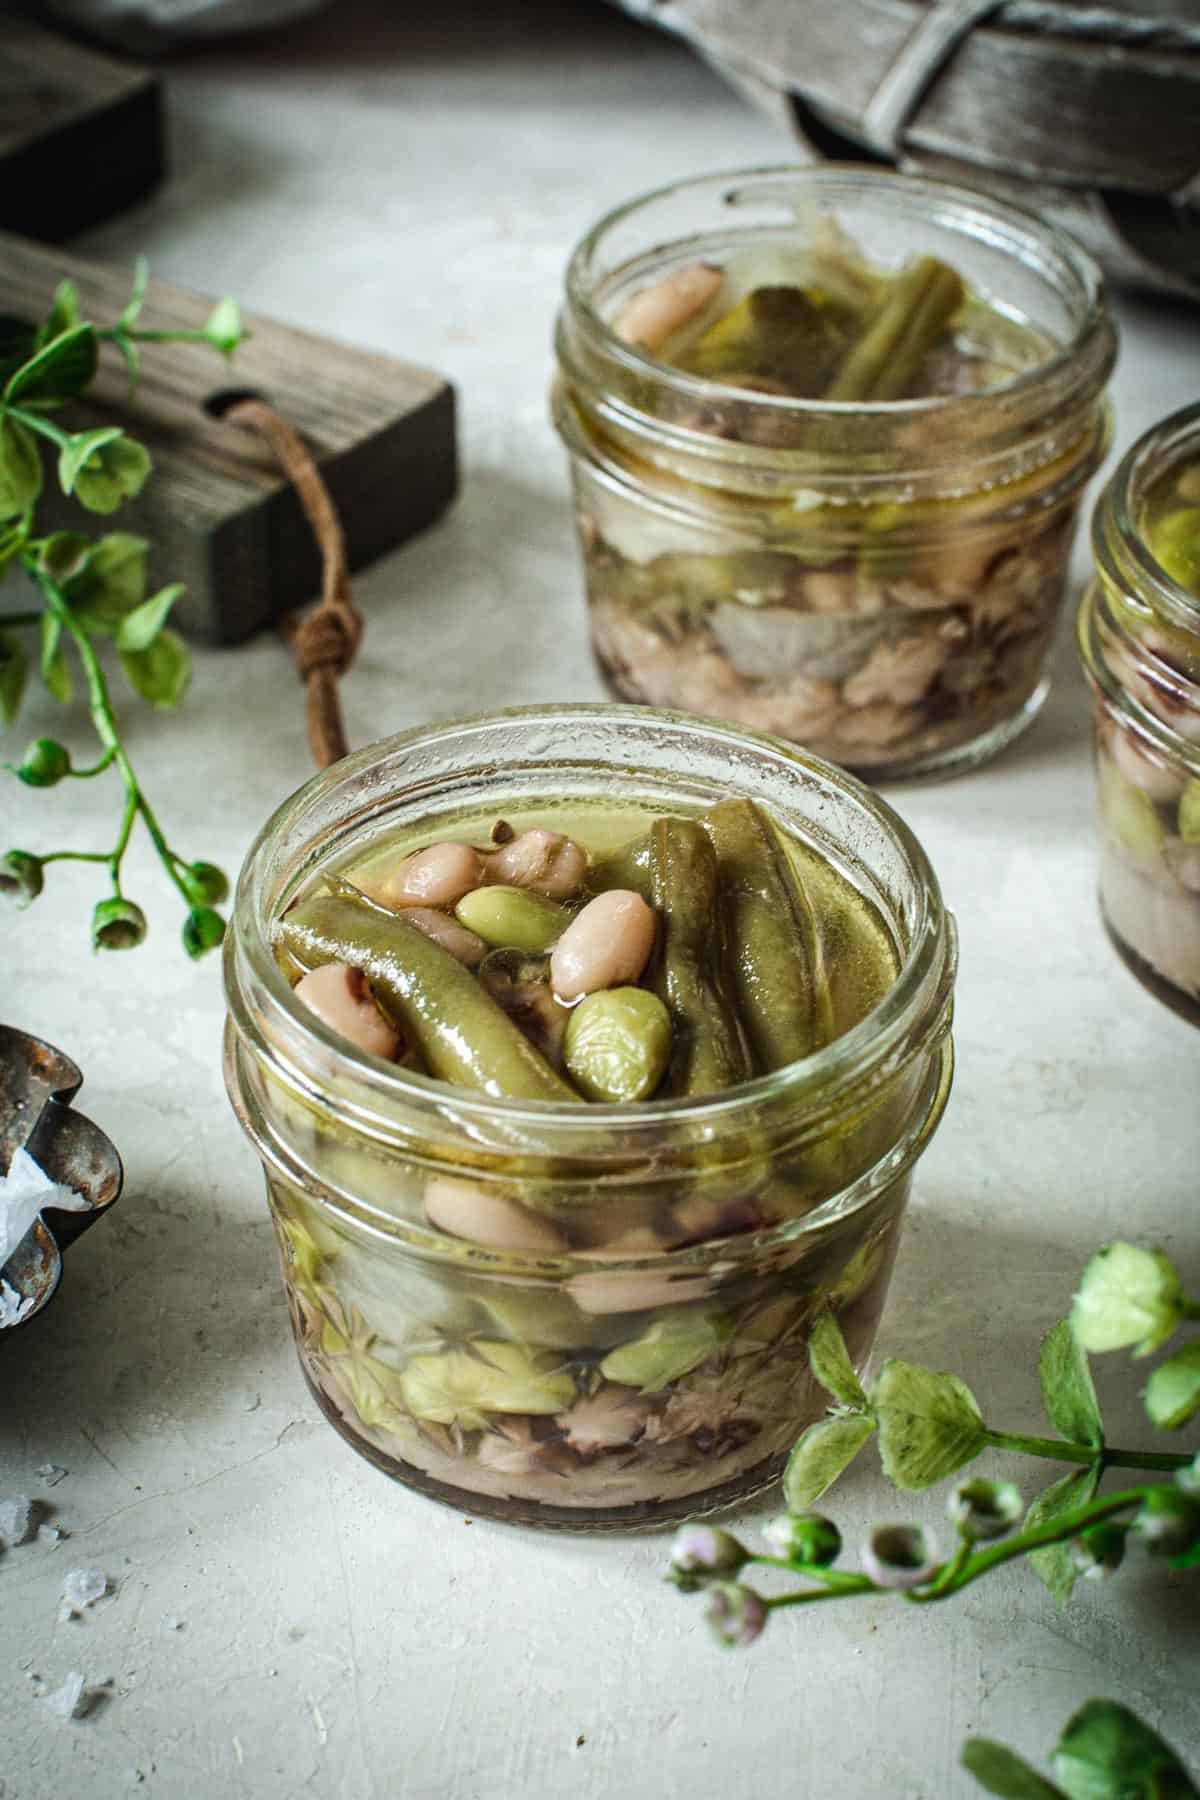 Pickled three bean salad in a half-pint jar.